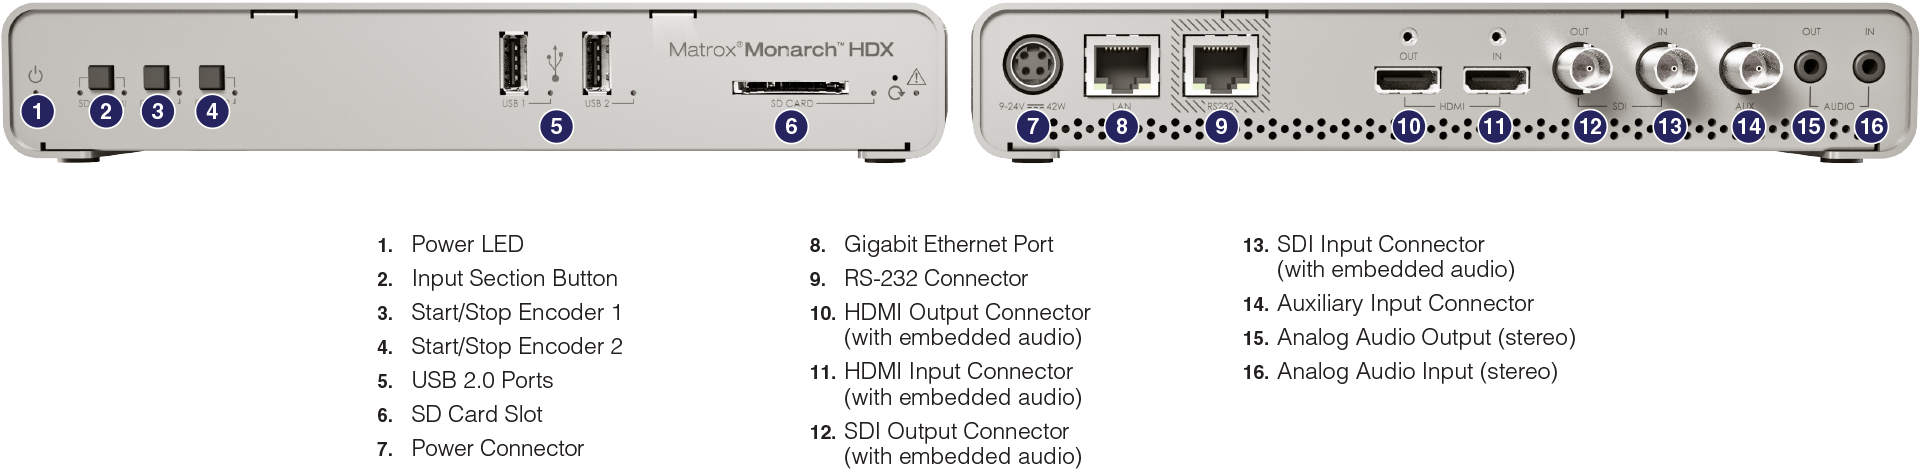 Monarch HDX Connections